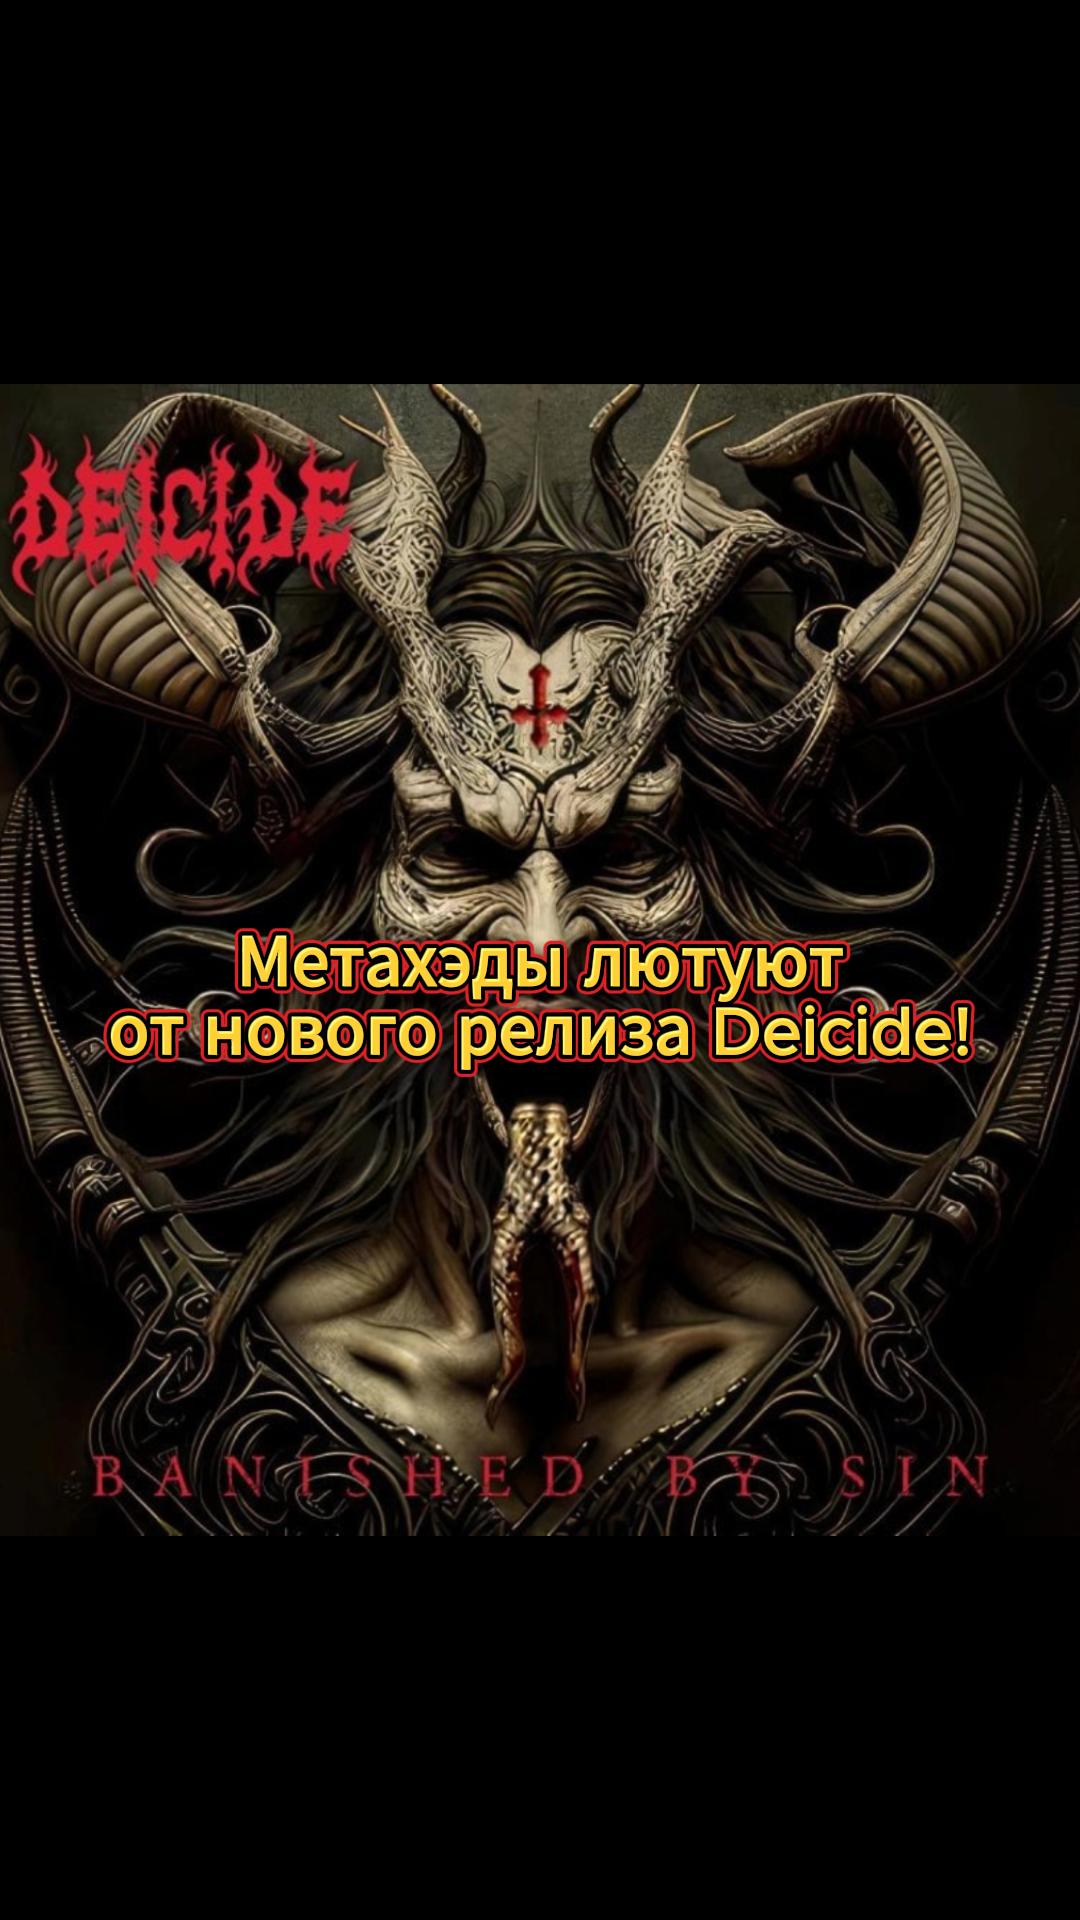 Новый арт на пластинке группы Deicide выбесил фанатов